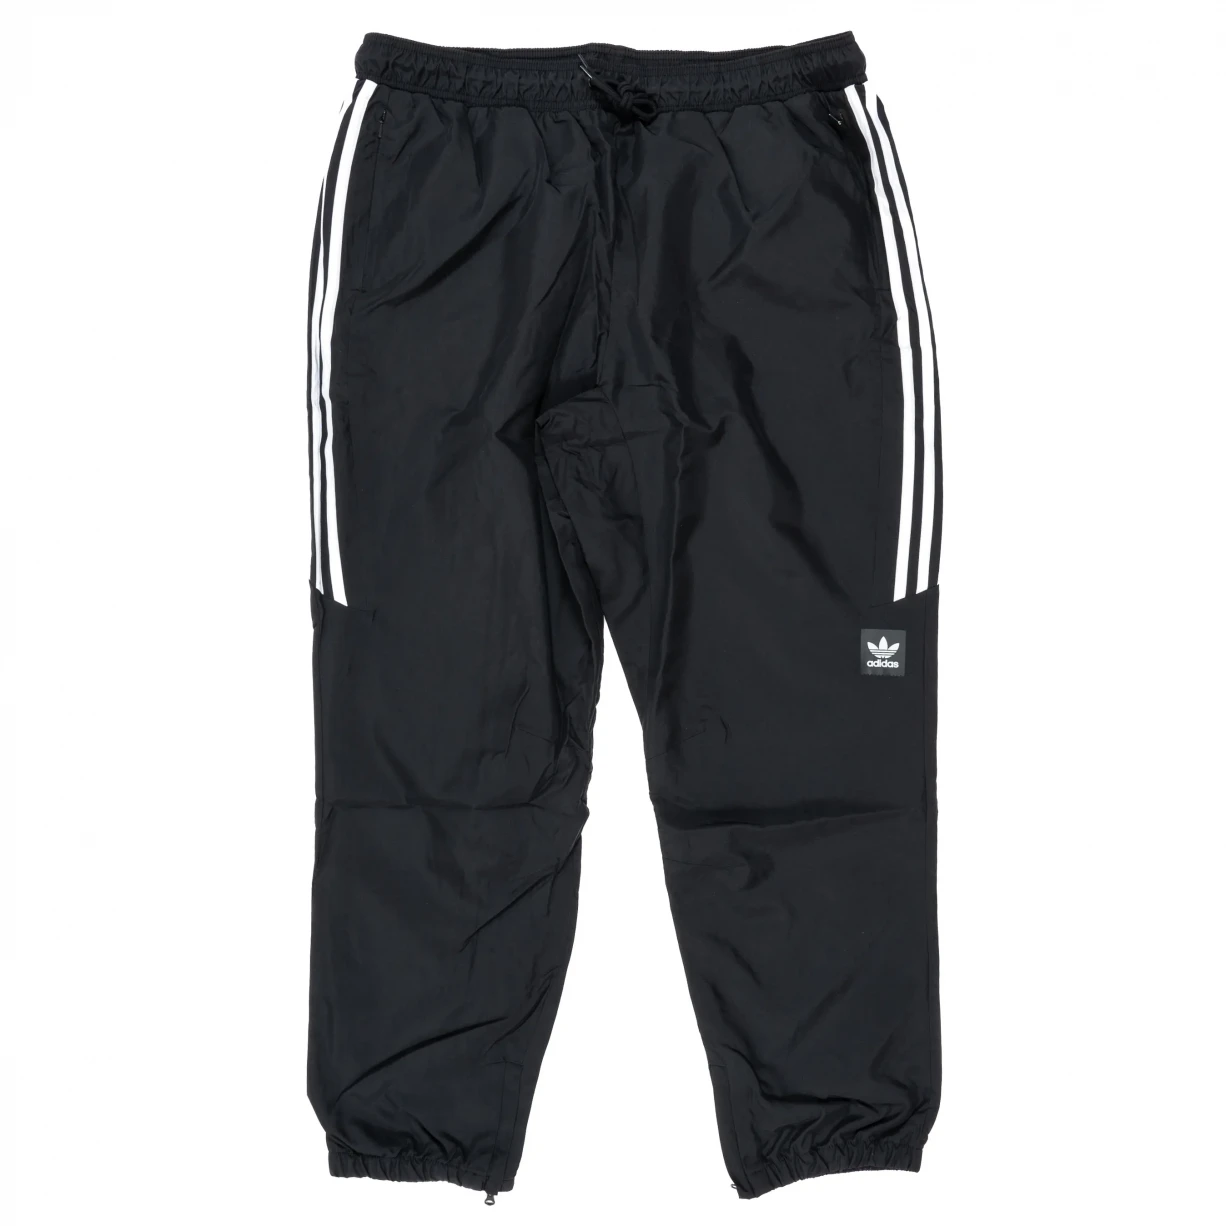 Item 894952 - Adidas Classic Wind Pant - Men's - Men's Casual